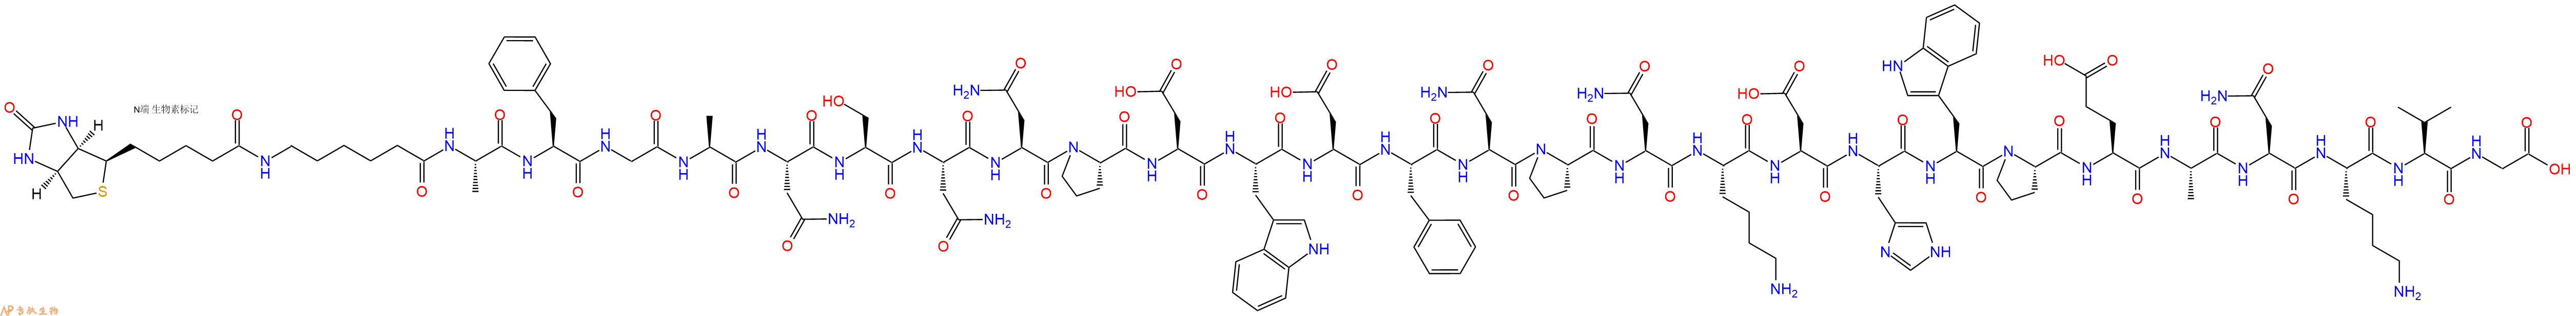 专肽生物产品生物素标记肽Biotin-Acp-Ala-Phe-Gly-Ala-Asn-Ser-Asn-Asn-P